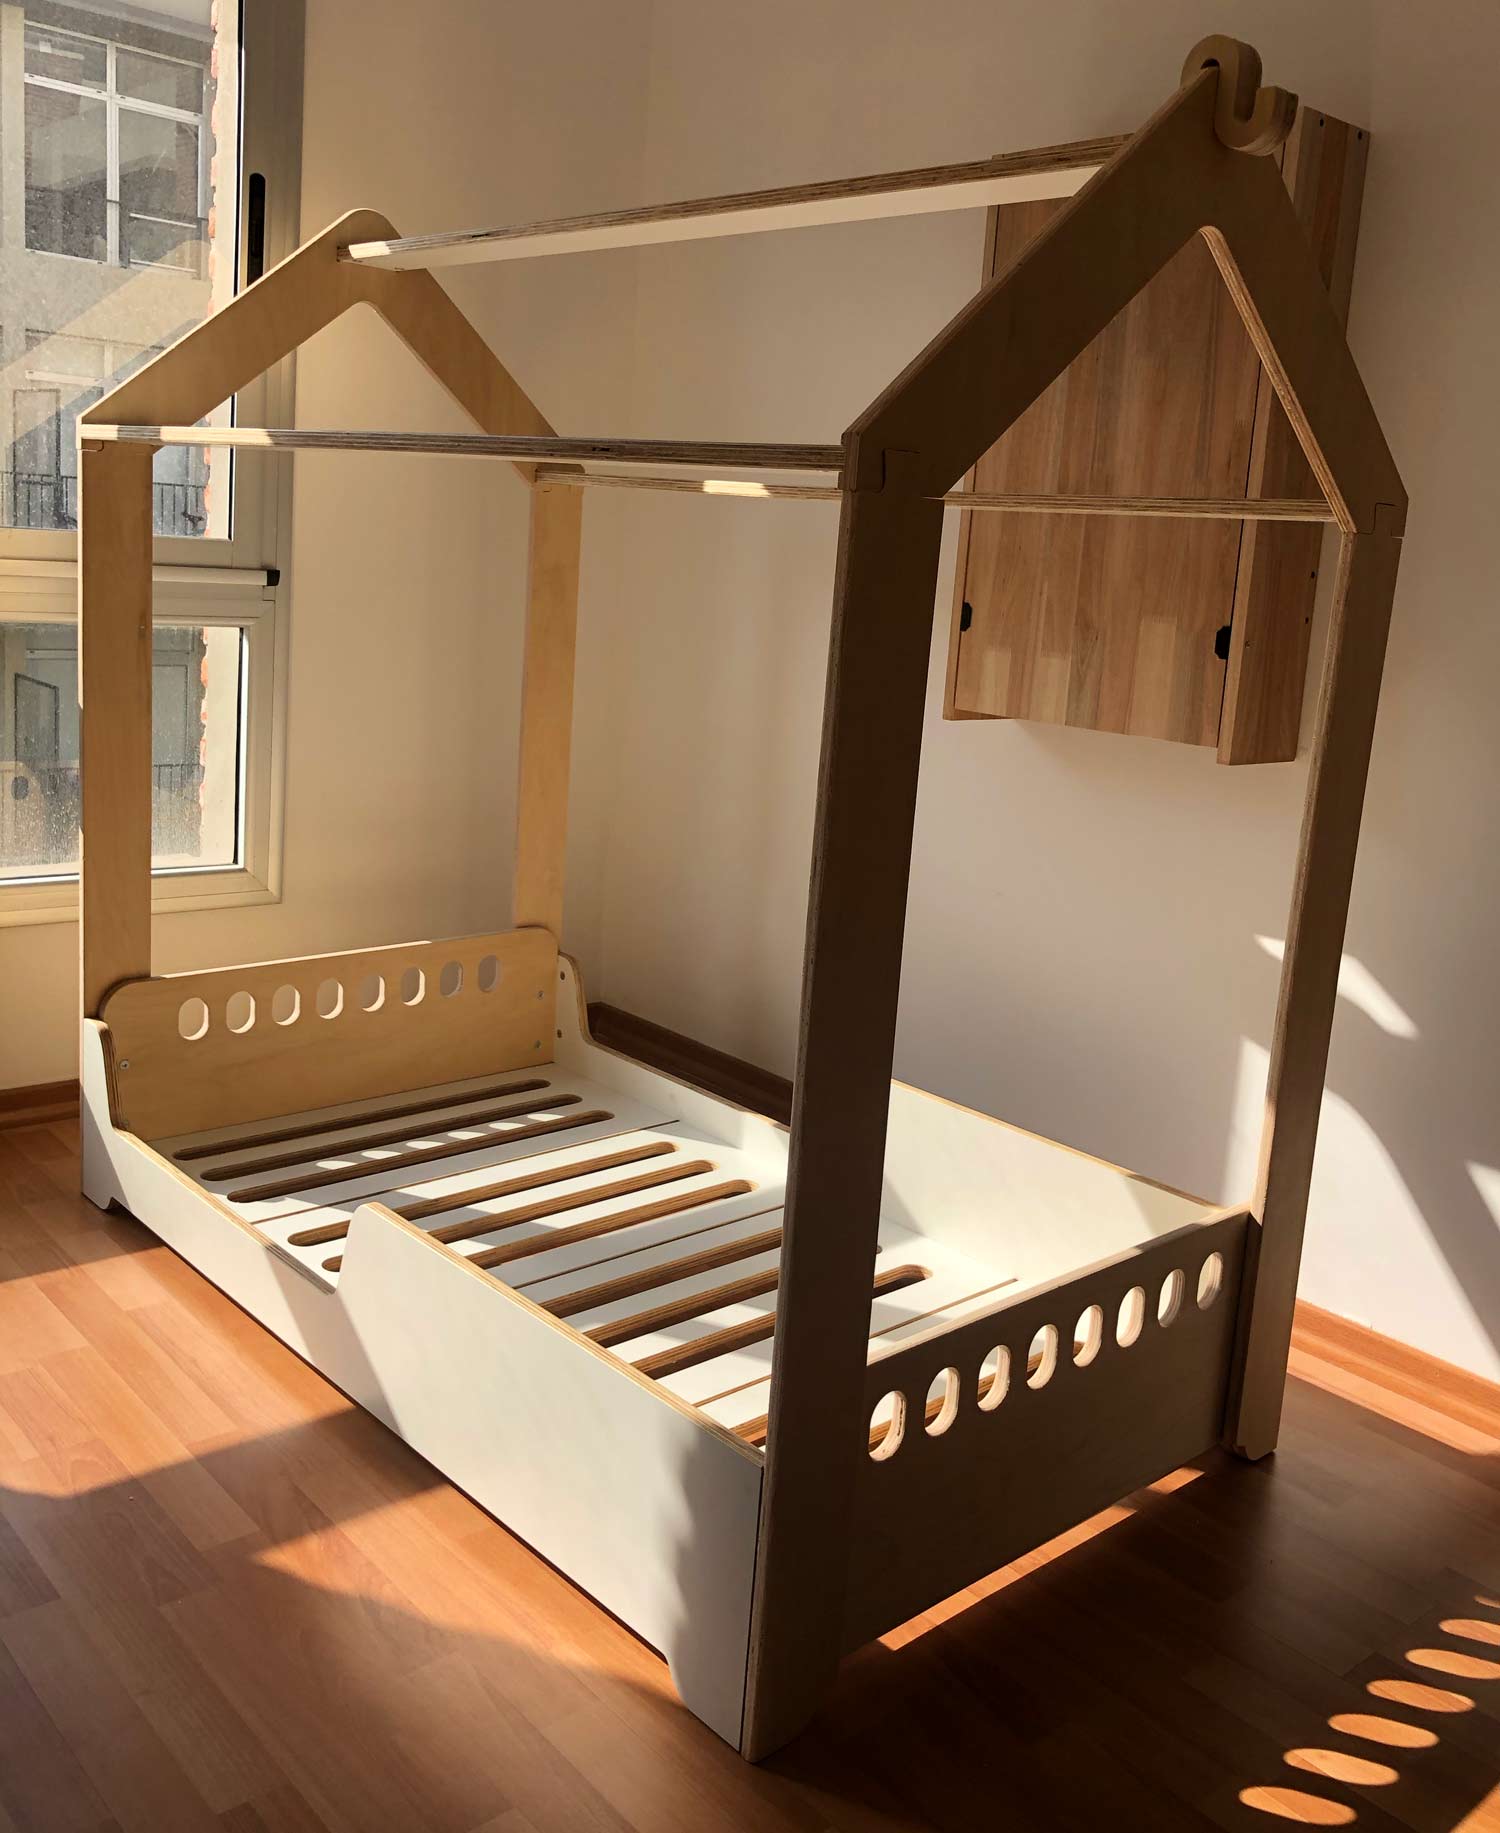 Cama con casita – Muebles inspirados en Pedagogía Montessori